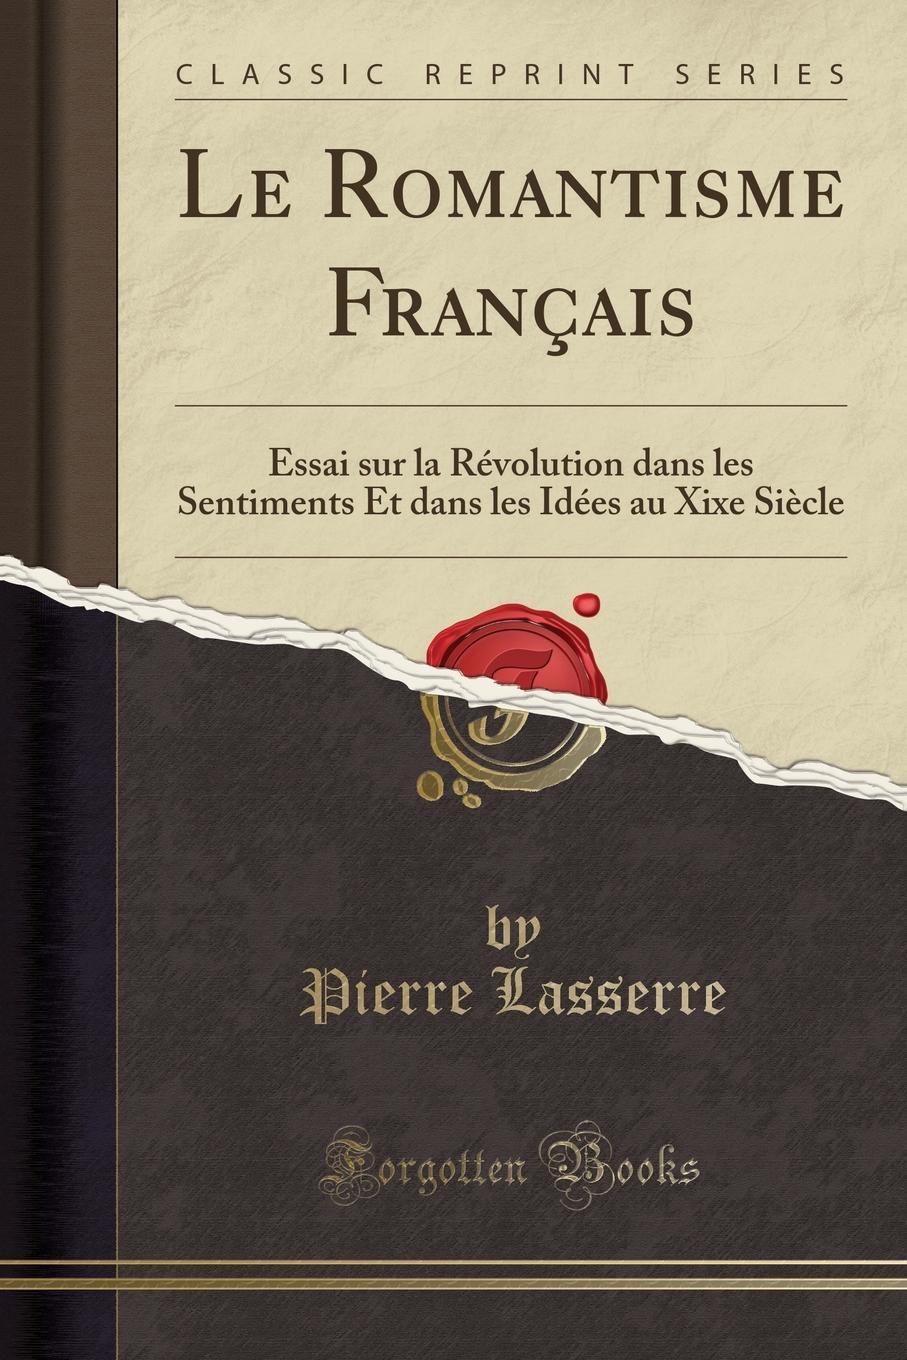 Le Romantisme Francais. Essai sur la Revolution dans les Sentiments Et dans les Idees au Xixe Siecle (Classic Reprint)